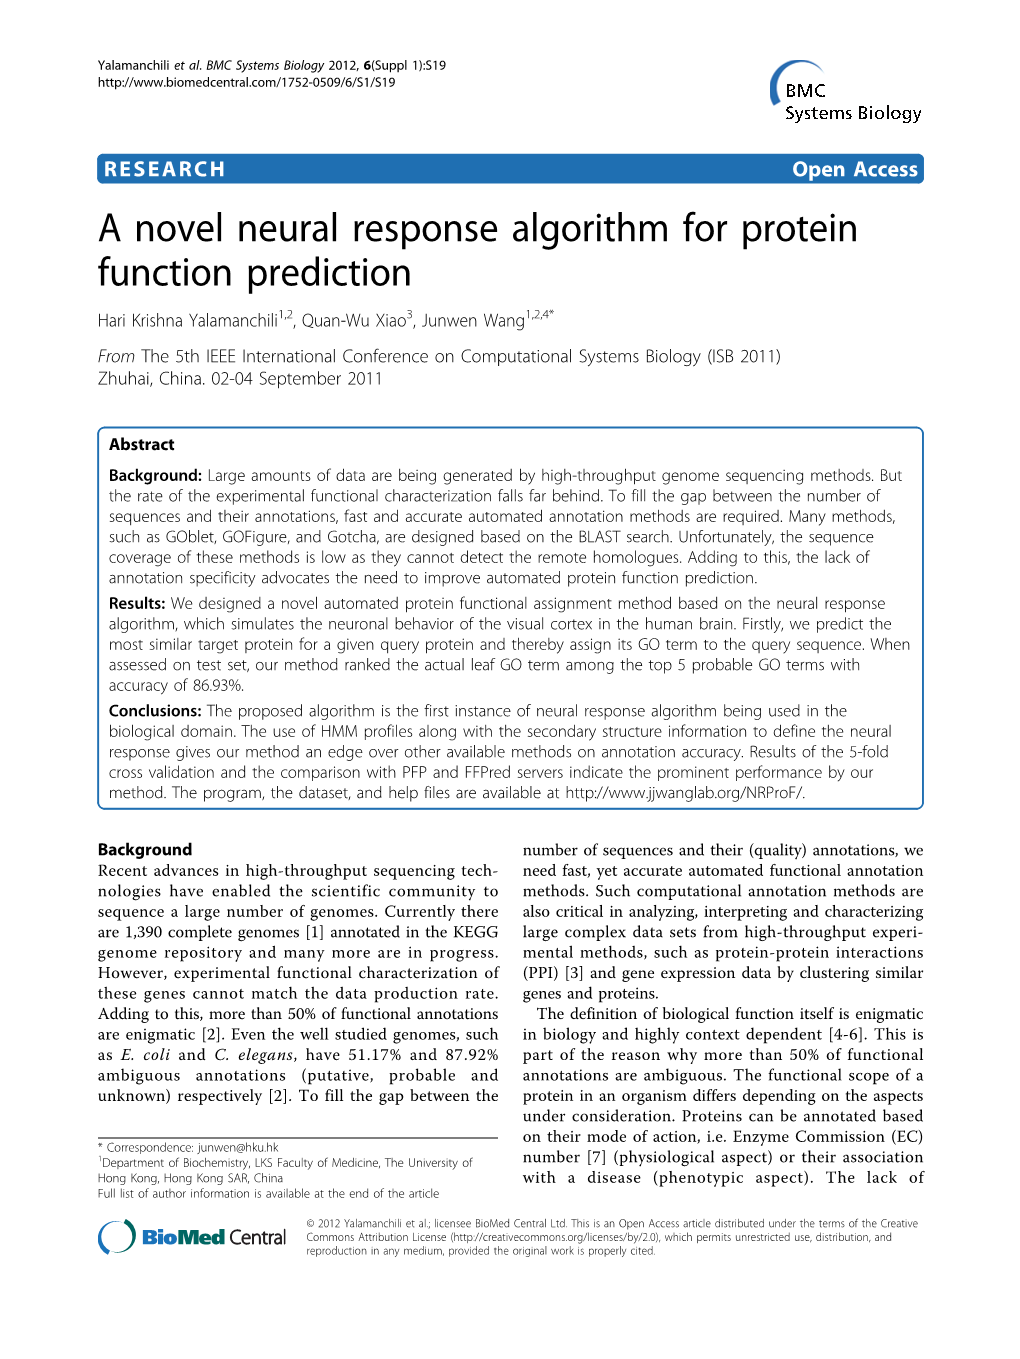 A Novel Neural Response Algorithm for Protein